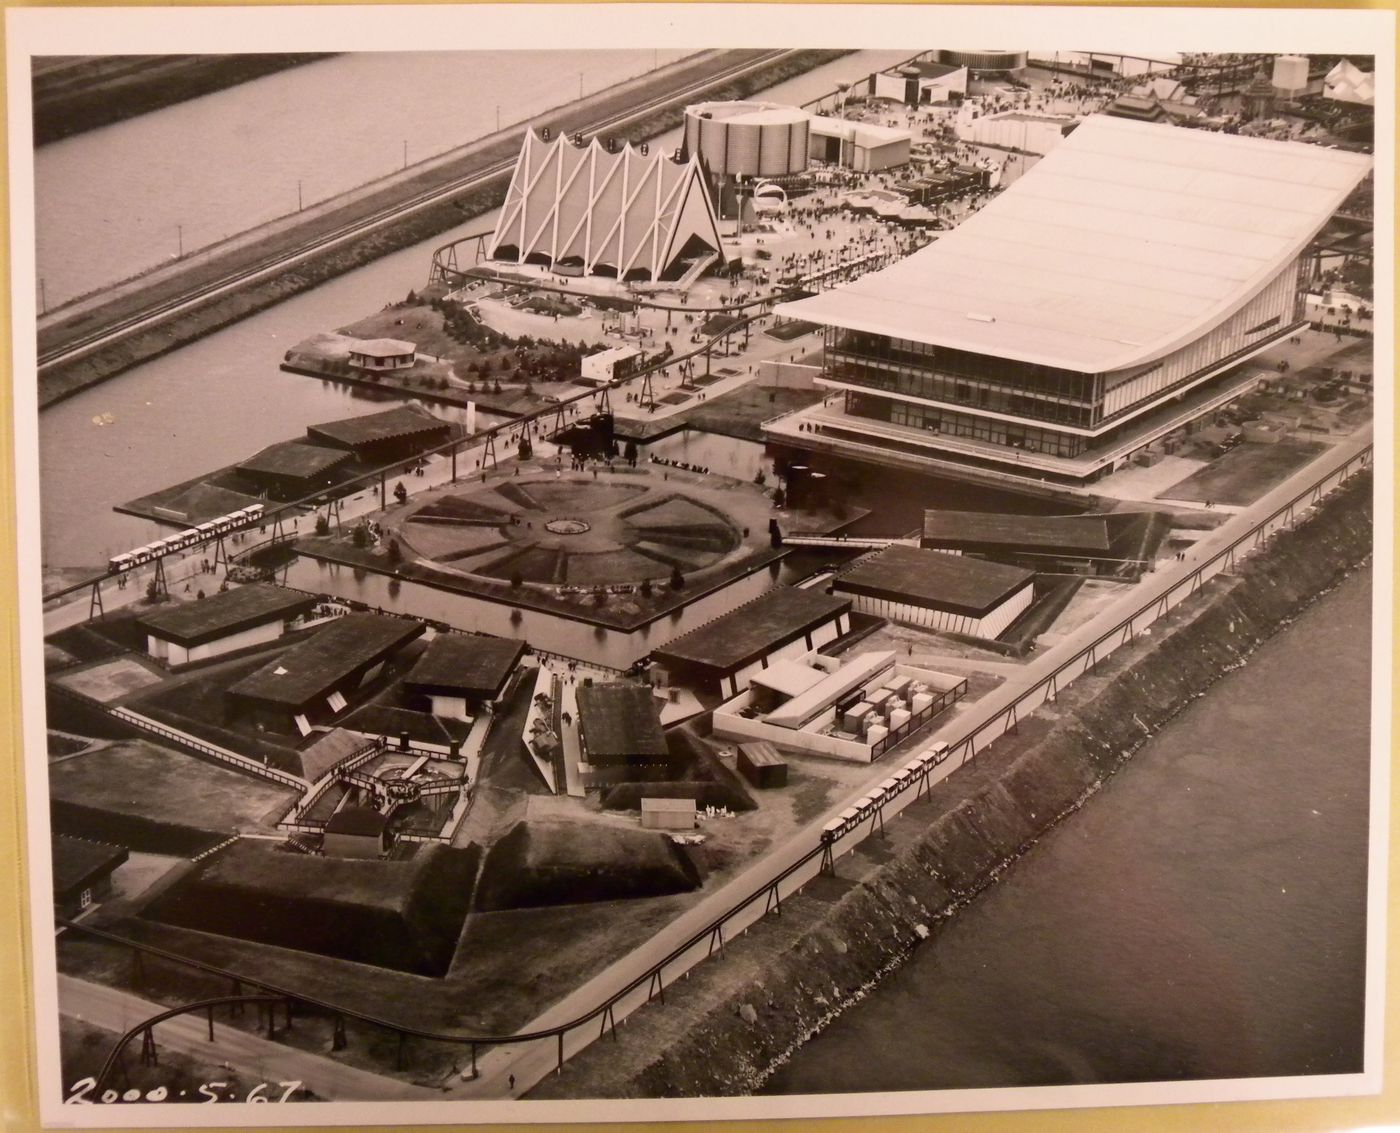 Aerial view of the Île Notre-Dame site, Expo 67, Montréal, Québec